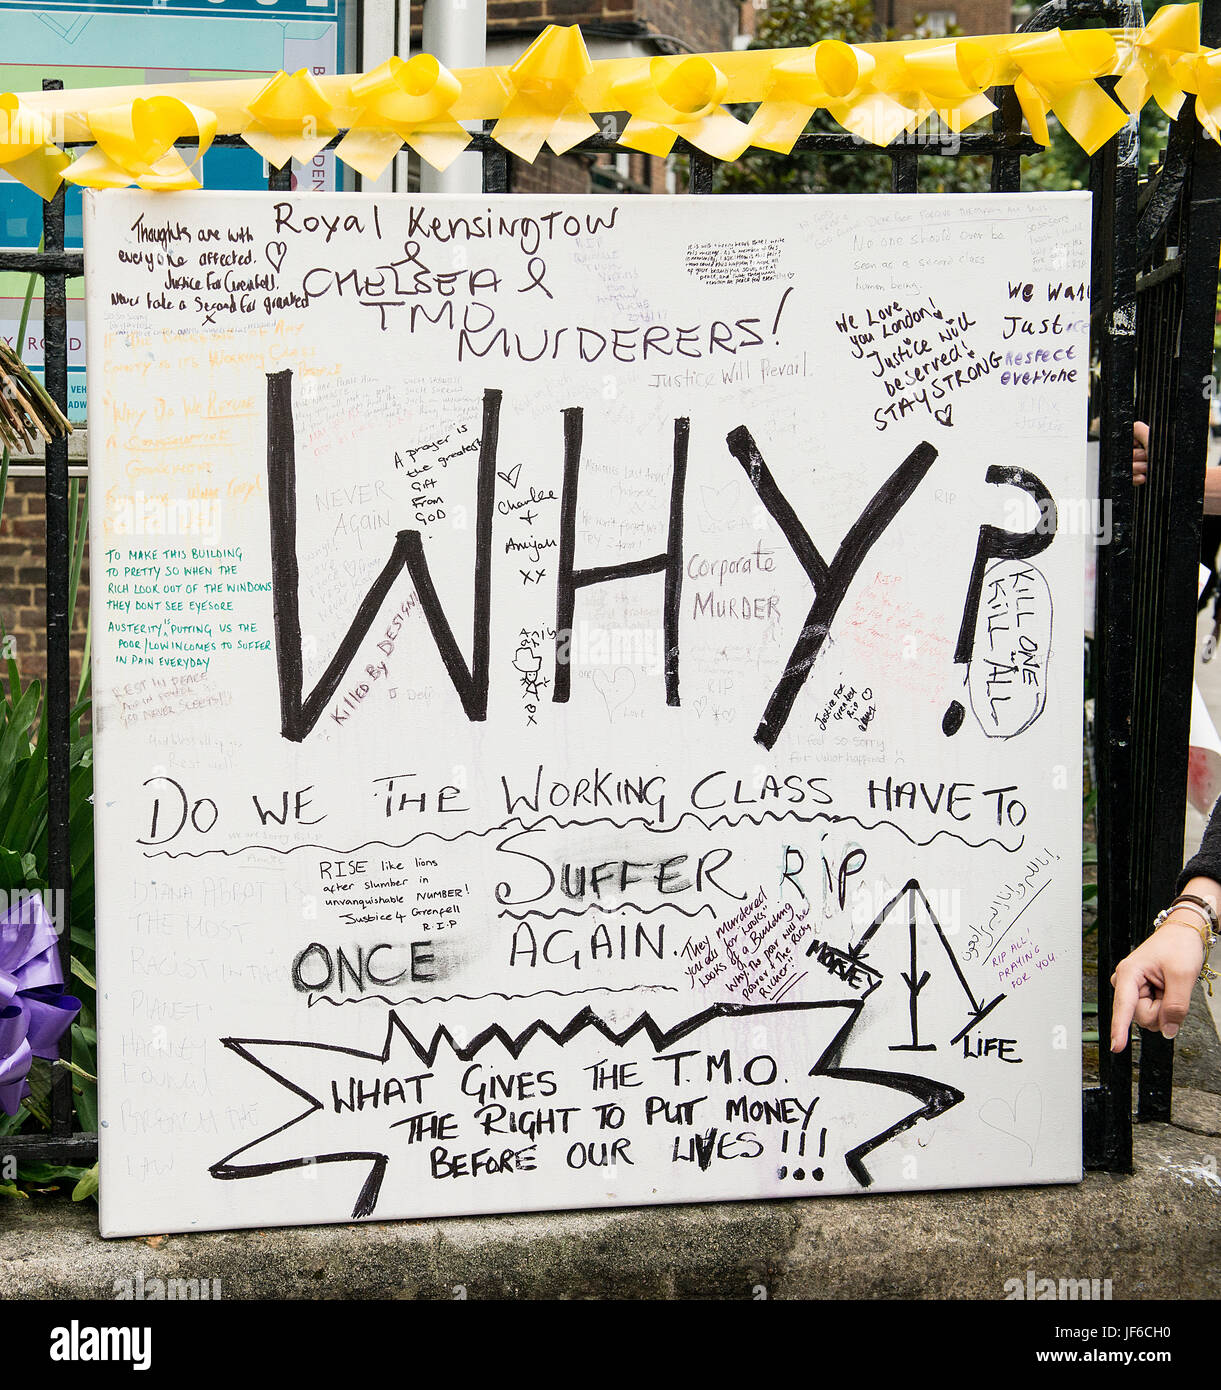 Tributs floraux & messages pour les victimes de la catastrophe de l'incendie de la tour de Grenfell, Londres, qui a laissé de nombreuses familles sans abri et 58 morts ou disparus. Banque D'Images